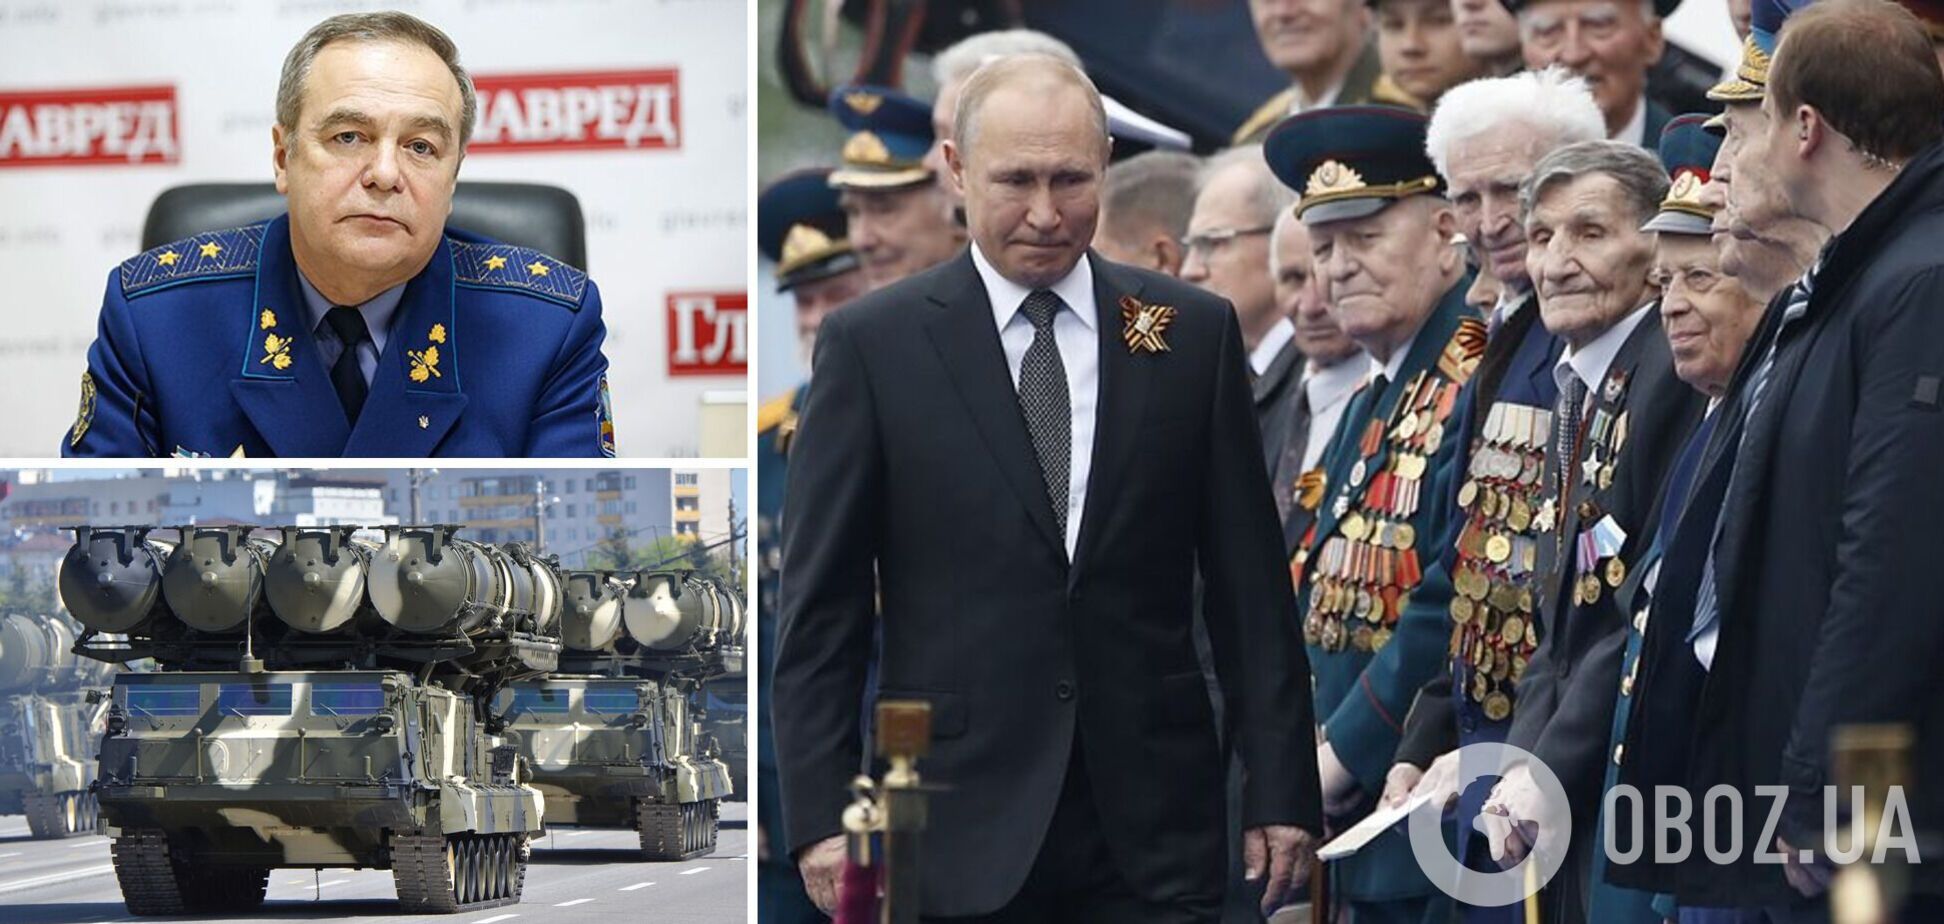 Генерал Романенко: Кремль изменил план относительно Украины, наши союзники активизировались. Интервью